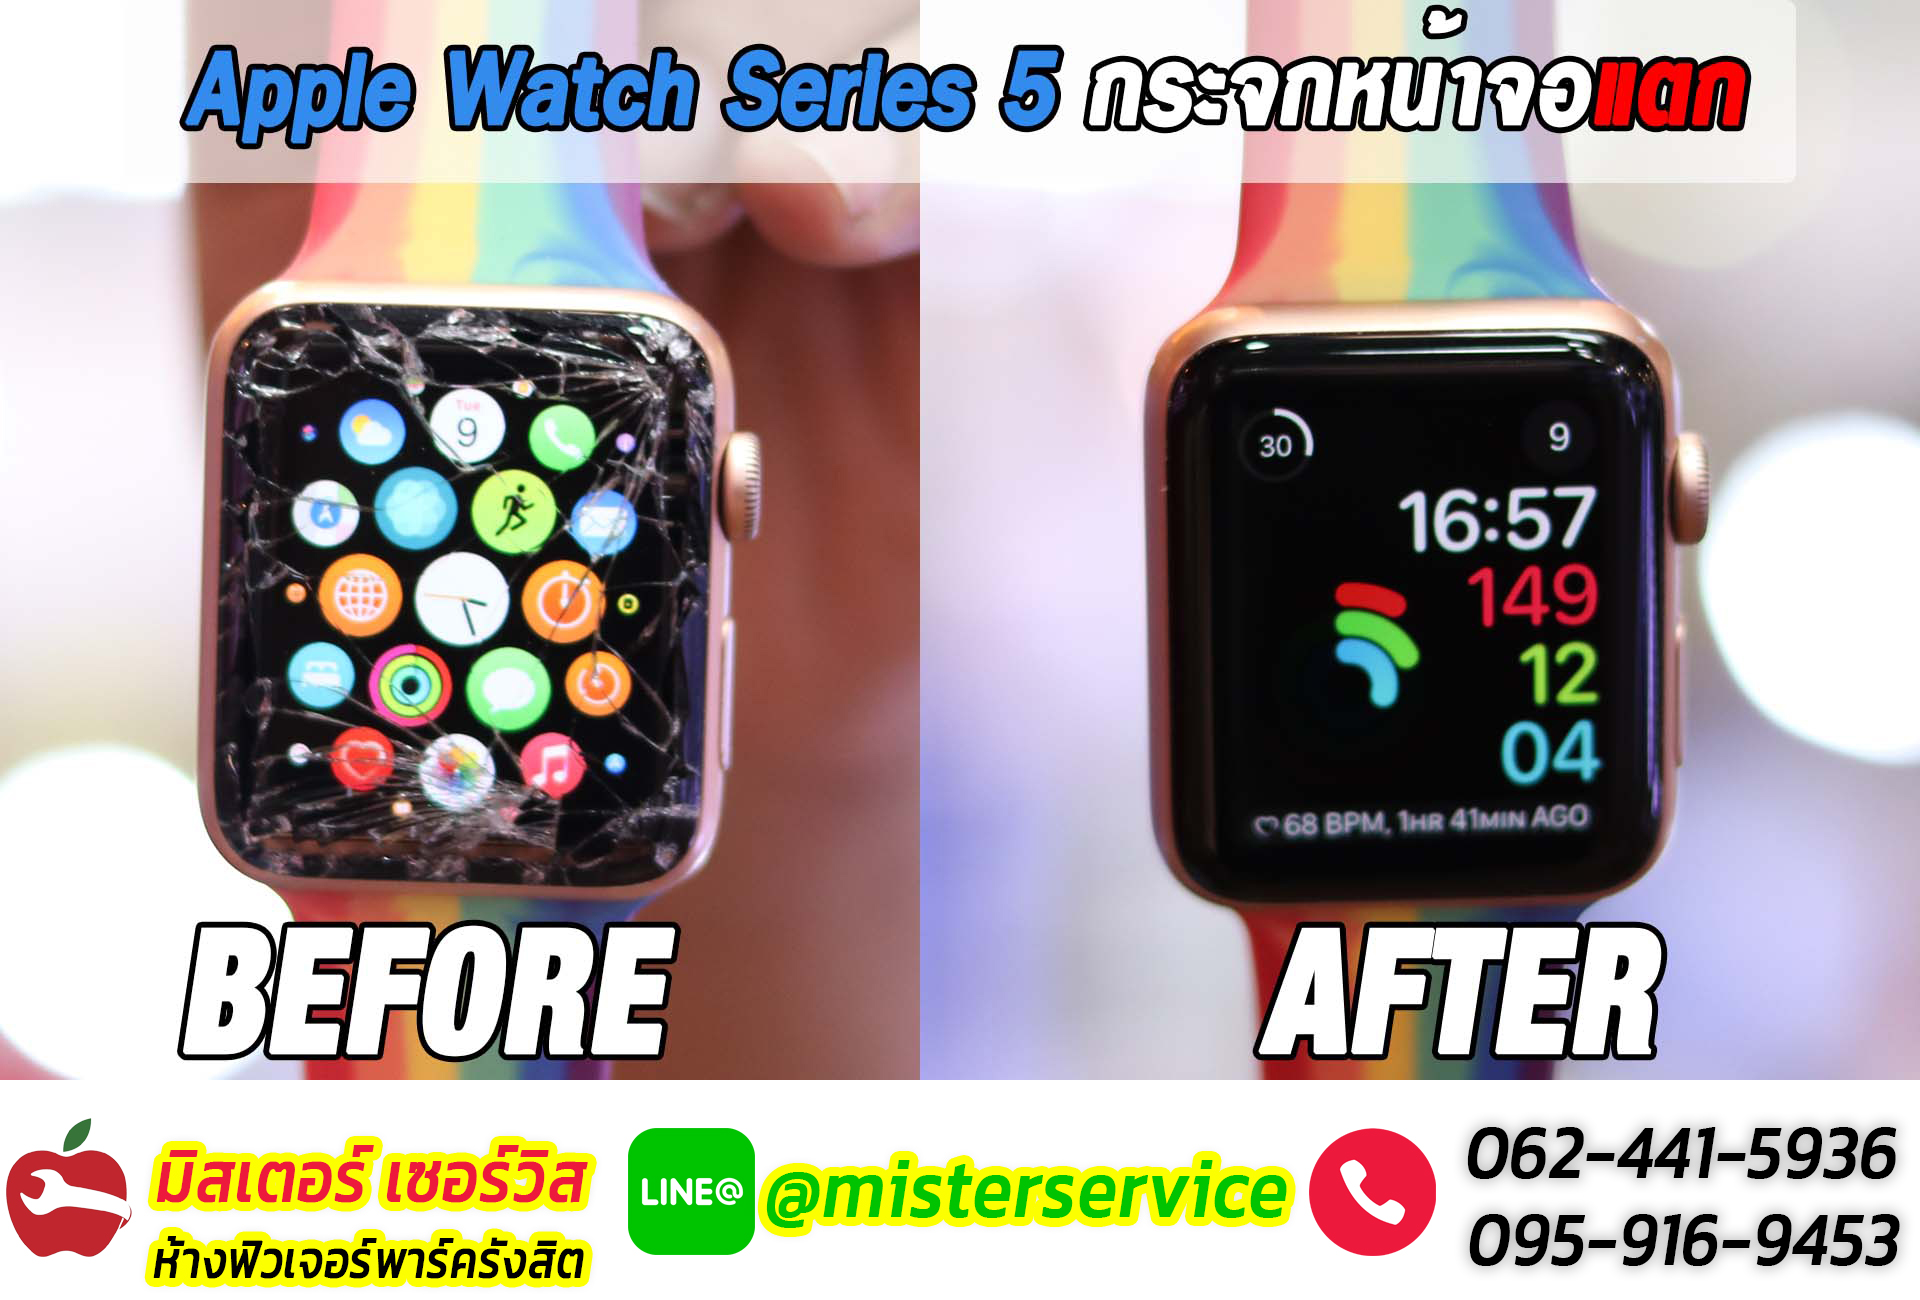 ซ่อม Apple Watch สงขลา